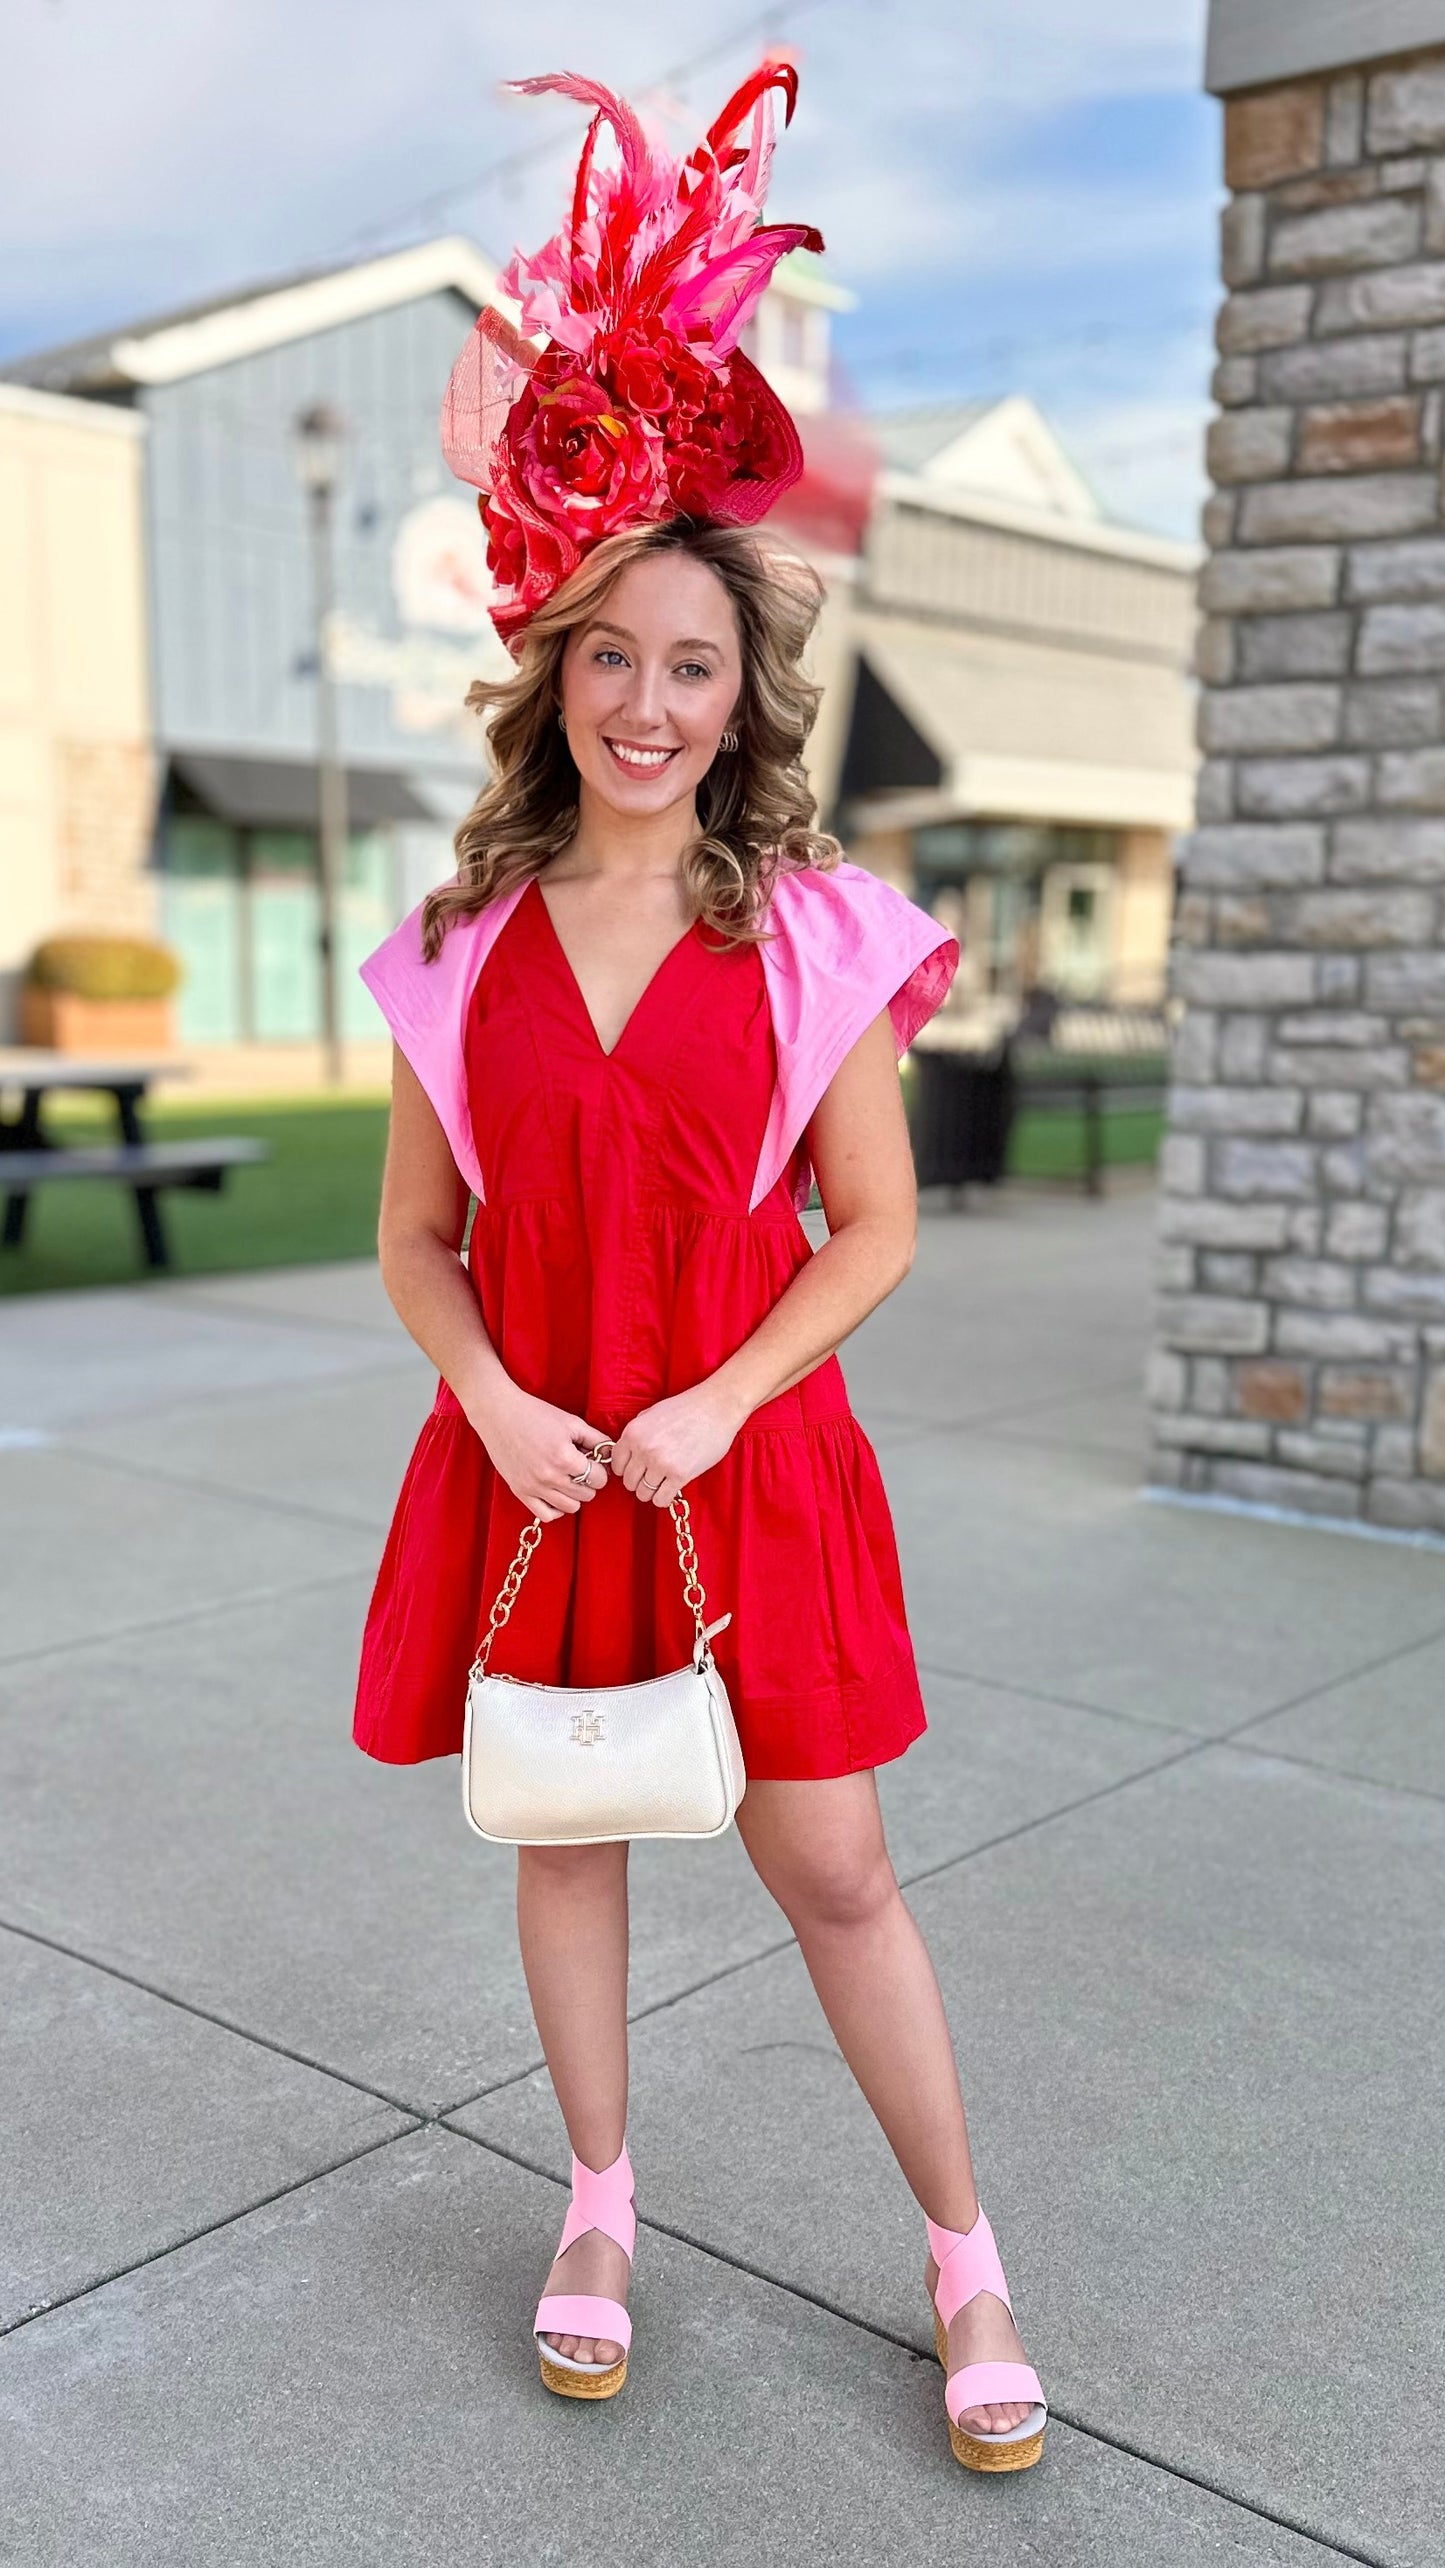 Color Pop Poplin Dress - Red/Pink